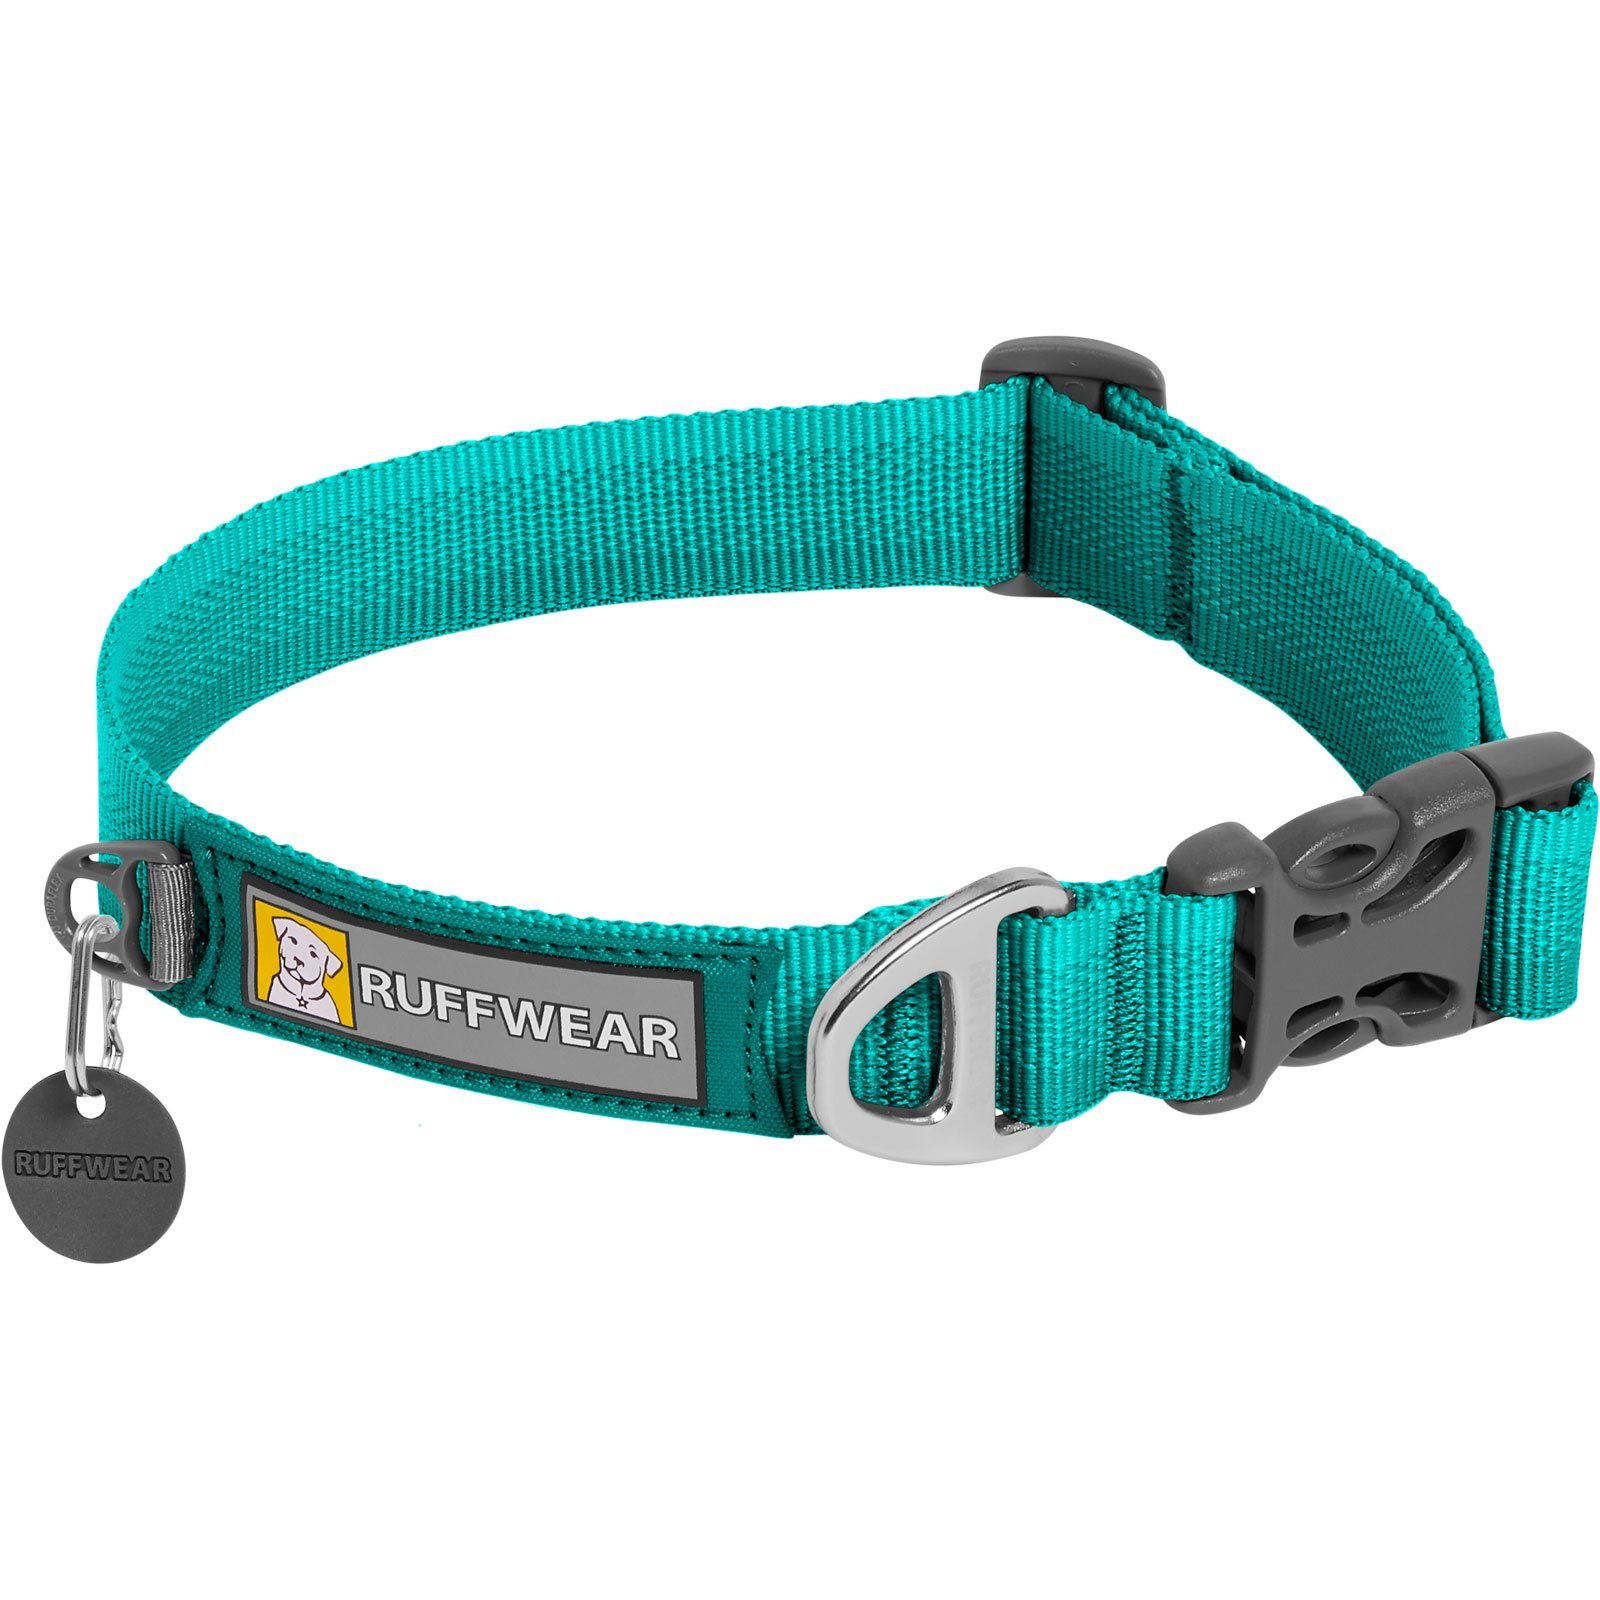 Ruffwear Hunde-Halsband FRONT RANGE™ COLLAR Aurora Teal, 100% Polyester Tubelok™ Schlauchband, Halsband für alltägliche Abenteuer.